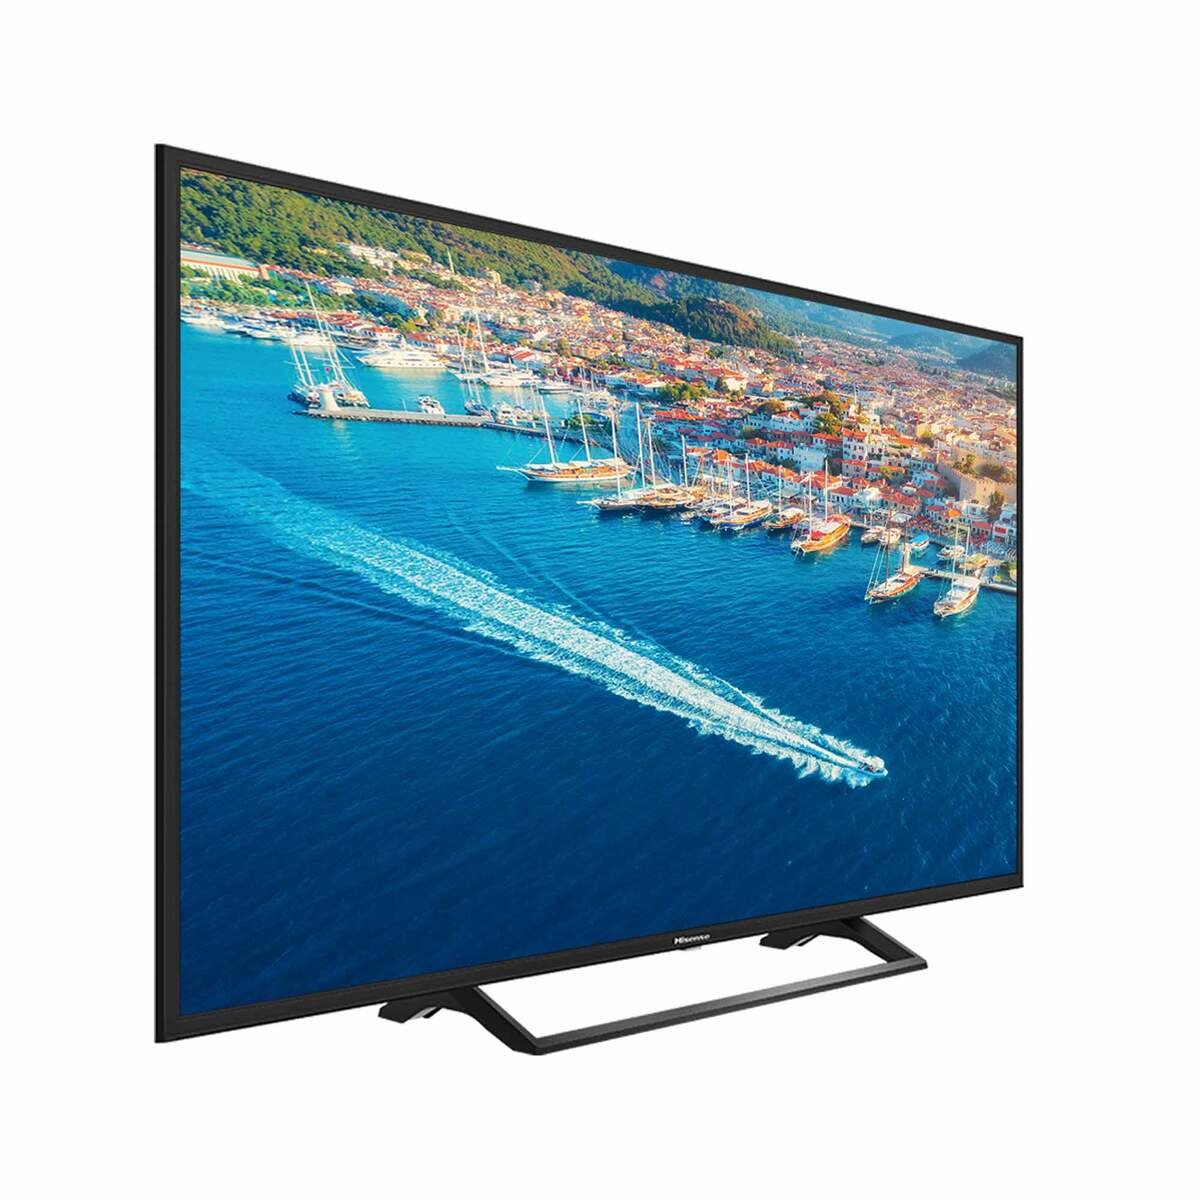 هيسينس شاشة تلفزيون 4 كيه ذكية عالية الدقة إل إي دي 65 بوصة 65B7300UW